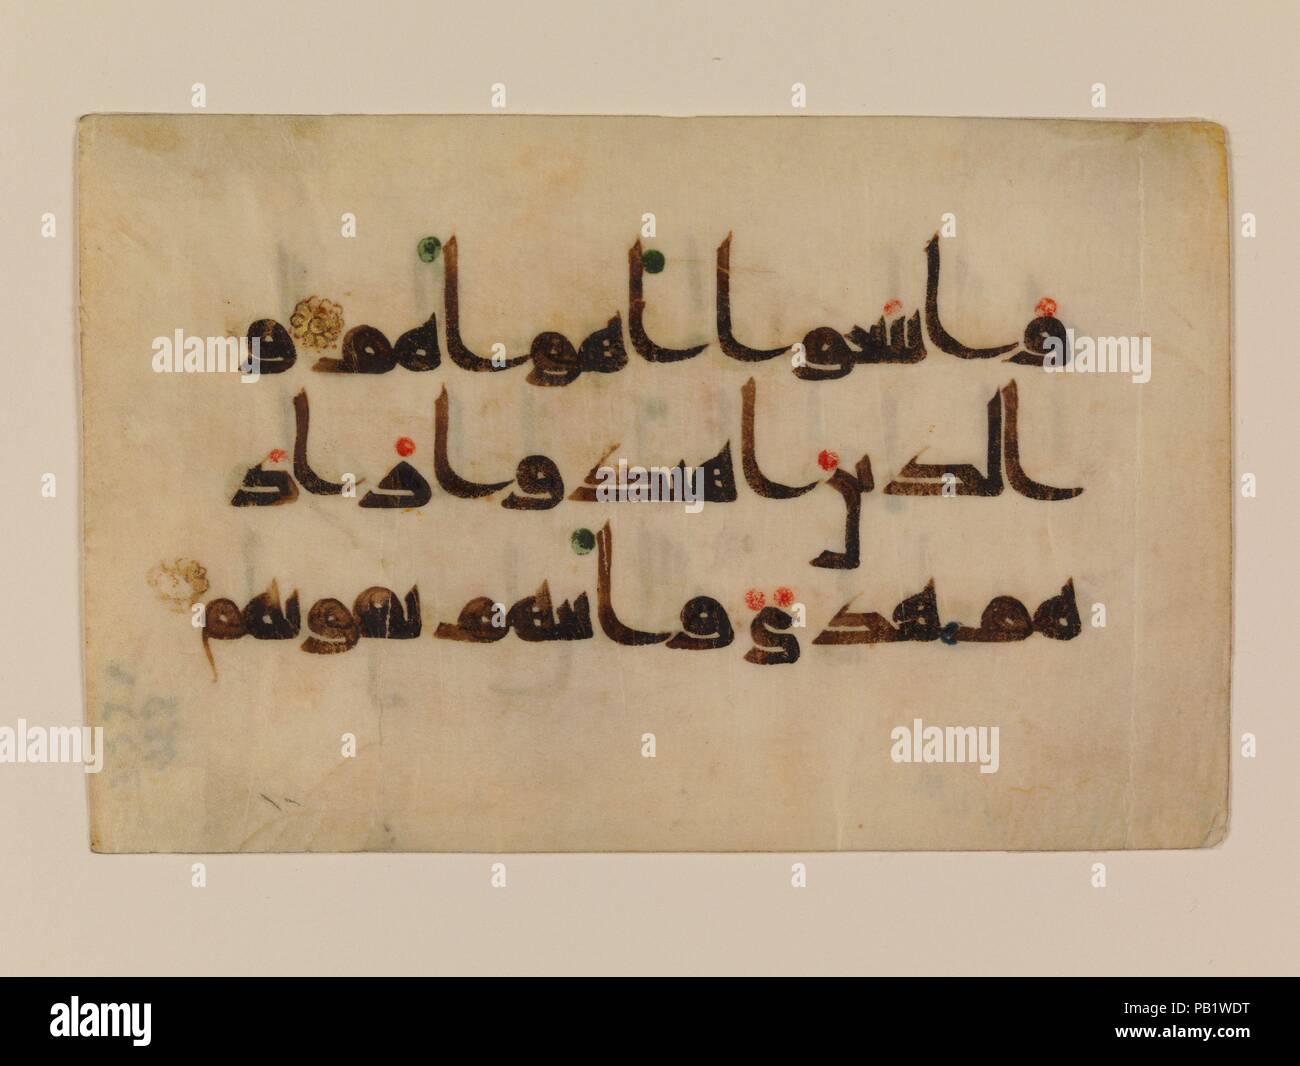 Folio à partir d'un Coran manuscrit. Dimensions : H. 3 5/16 in. (8,4 cm) O. 5 1/16 in. (12,9 cm). Date : 9ème-début 10ème siècle. Comme beaucoup de Coran folios, ce folio est écrit en parchemin à l'encre noire à l'aide d'un stylo. reed nibbed De l'horizontale, arrondi des lettres qu'on voit ici sont caractéristiques de Qur'ans coufique sur parchemin, et sont pensées pour être une réponse à la page format rectangulaire. Le script angulaire est animée par la rondeur de plusieurs lettres qui ressemblent à de gros points noirs, leurs espaces intérieurs réduits à de petits cercles. Le rouge et les points verts indiquent la voyelle marques. Musée : Banque D'Images